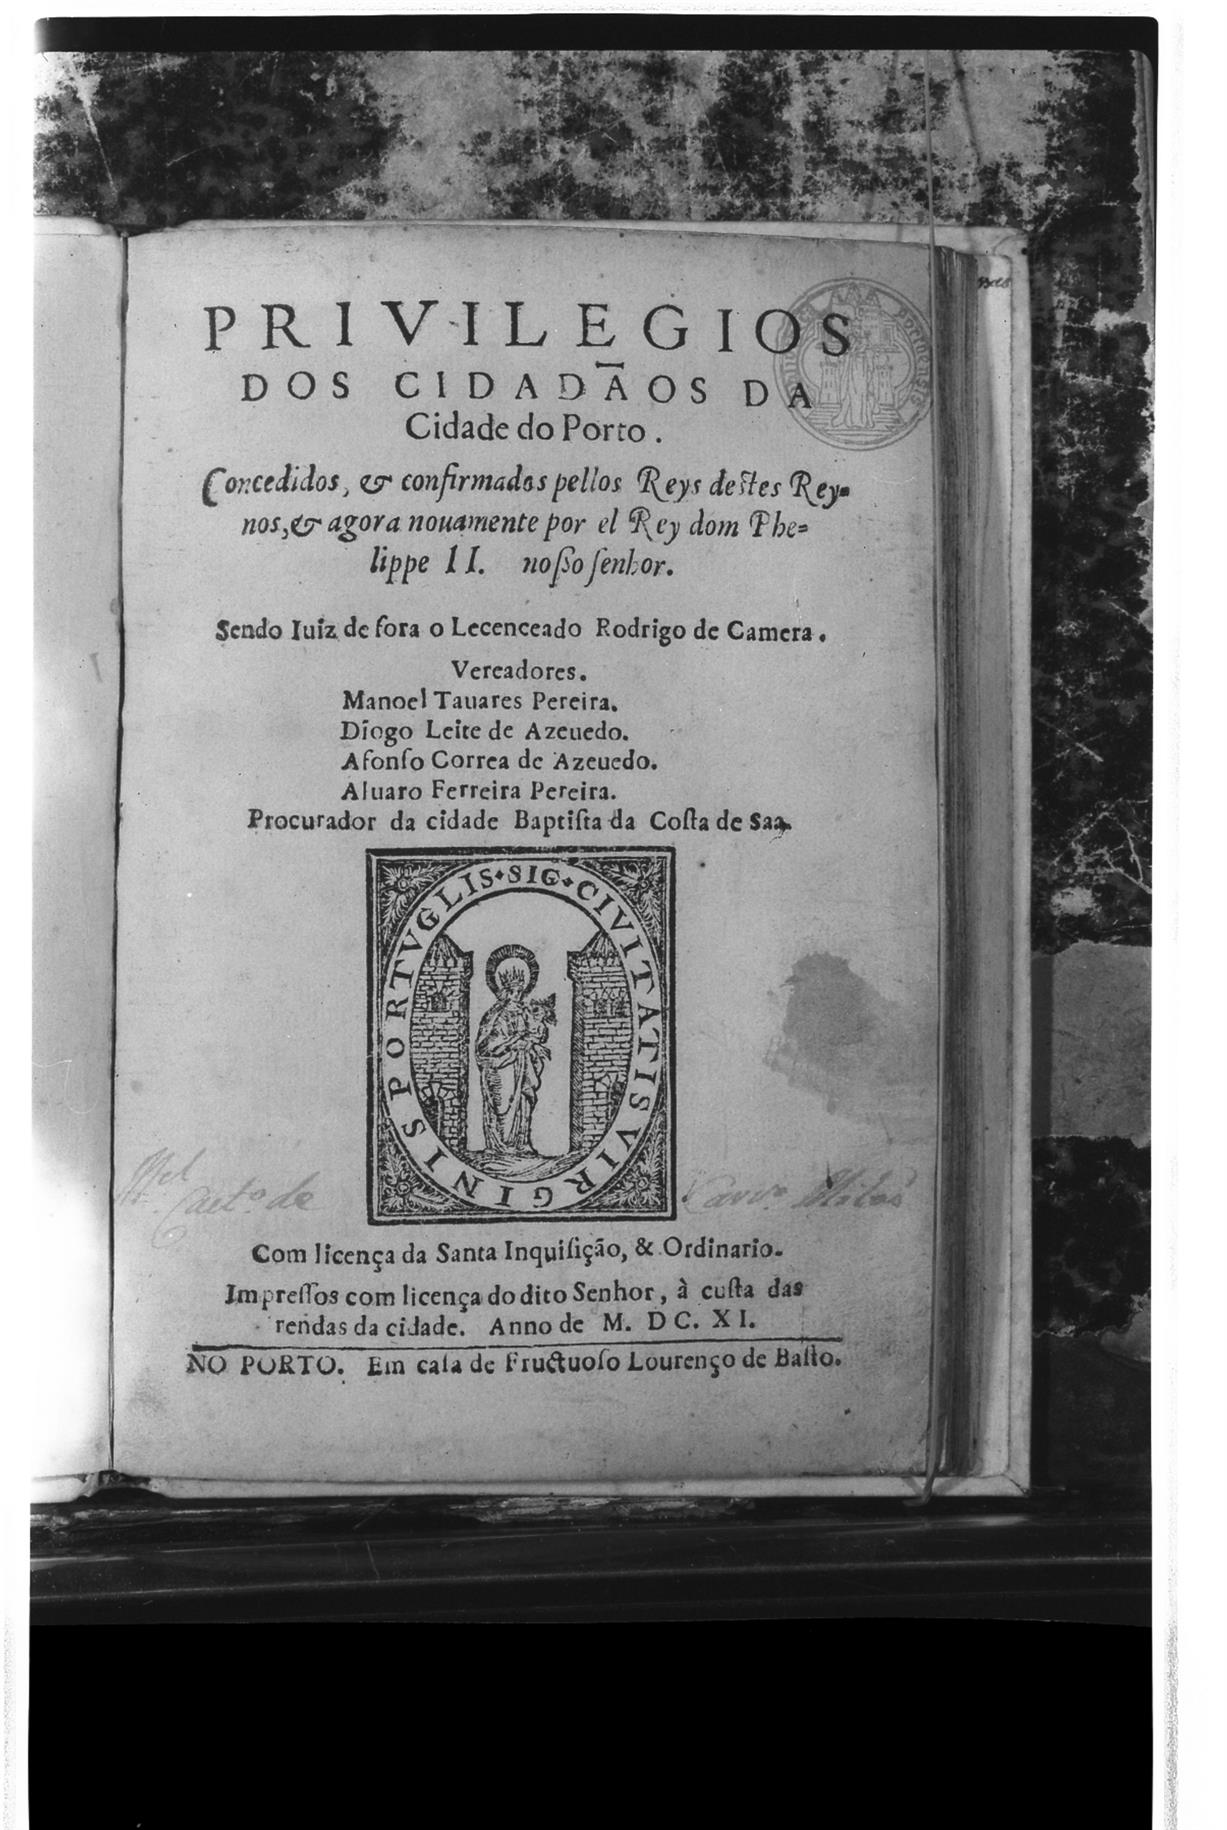 O Porto e a Europa do renascimento : privilégios dos Cidadãos da Cidade do Porto, 1611